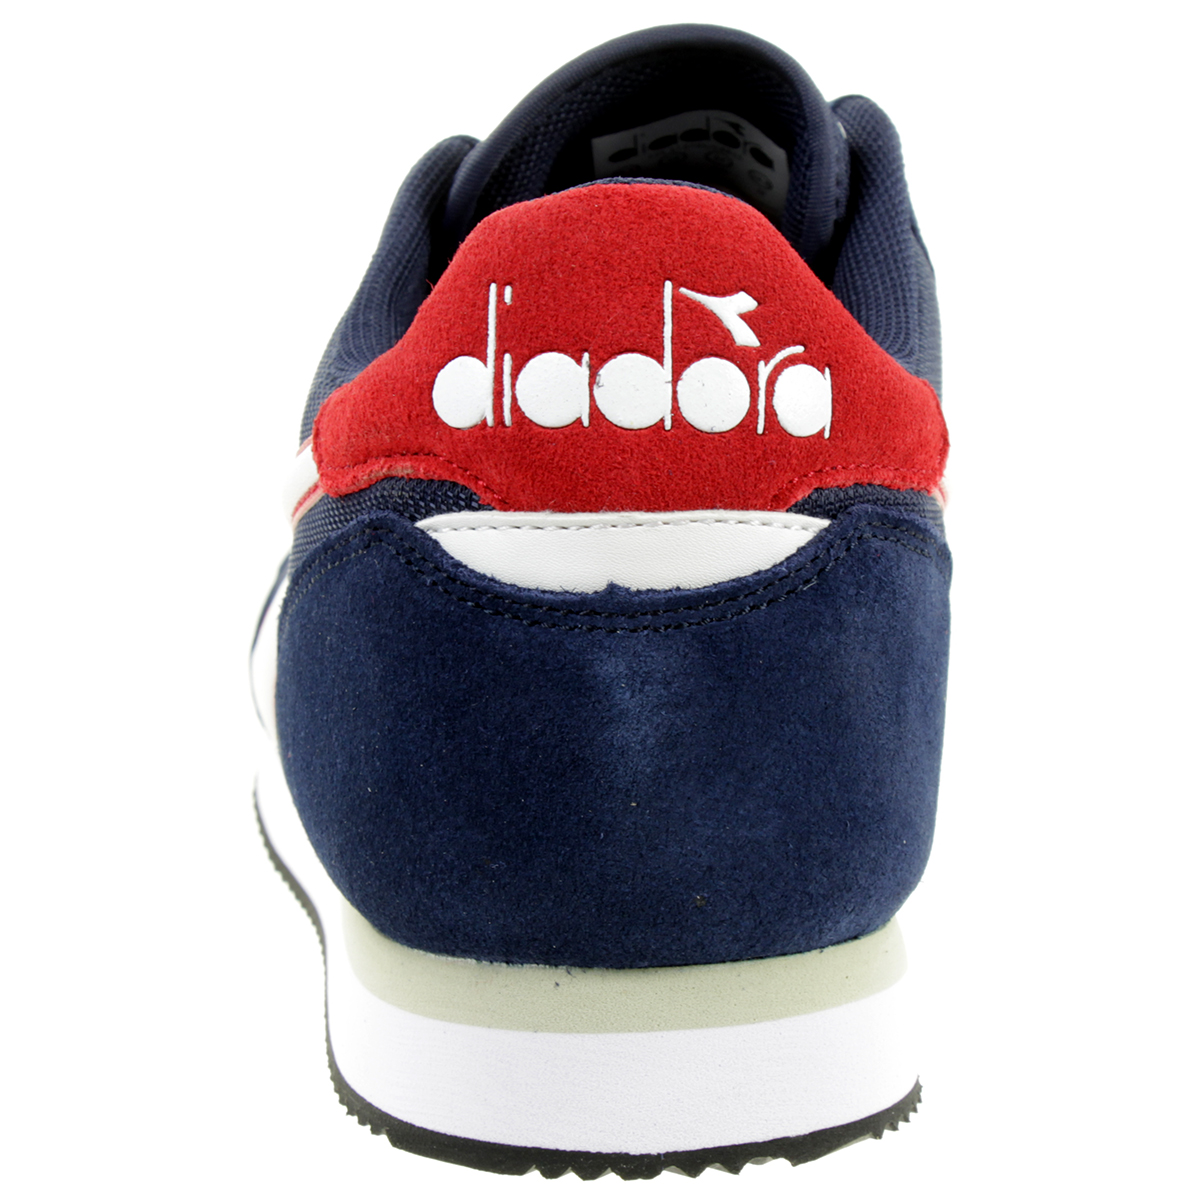 Diadora Simple Run Herren Sneaker Sportschuh Blau 